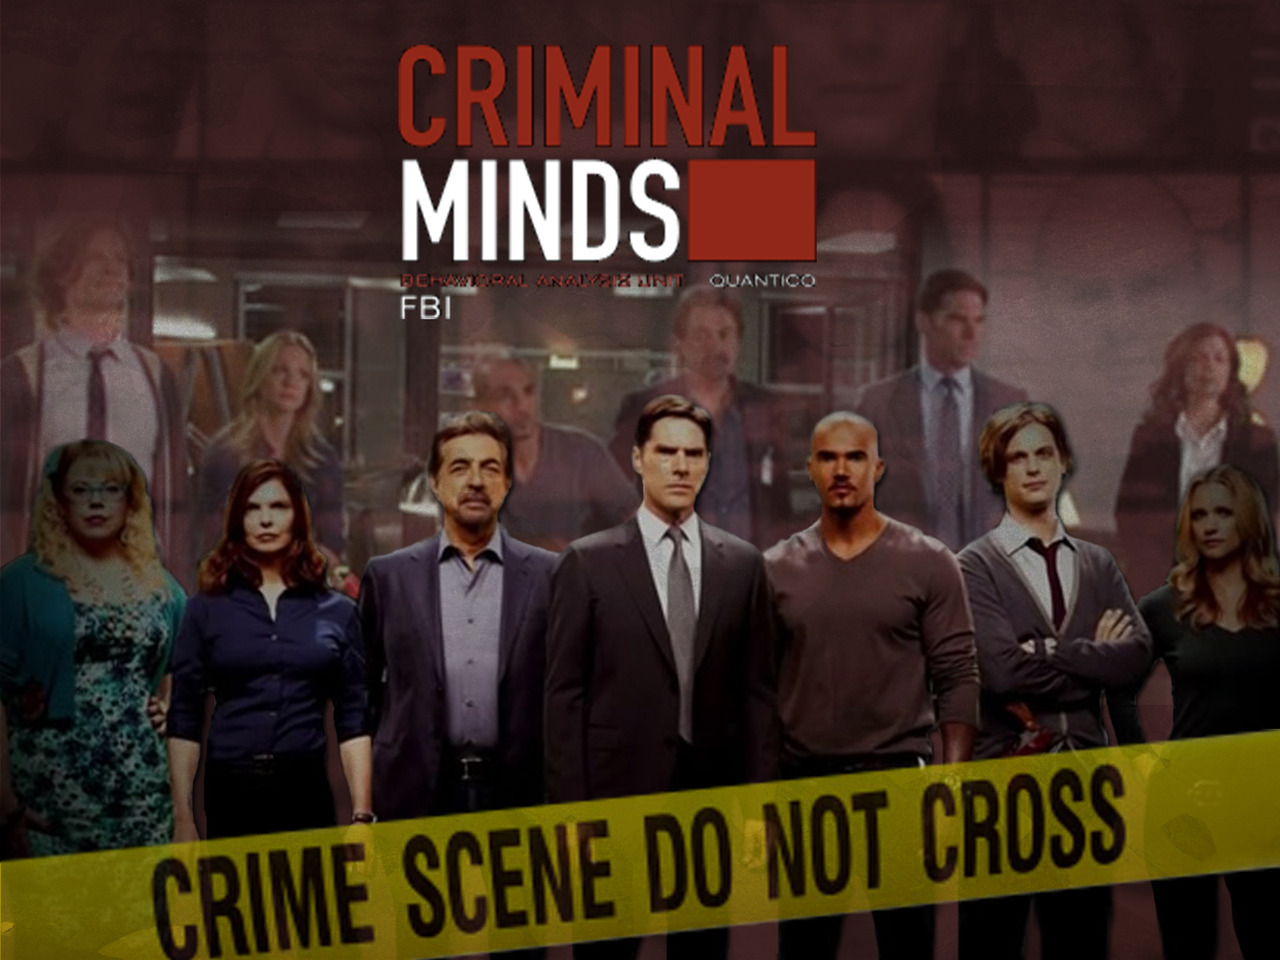 One Criminal Minds Wallpaper i made